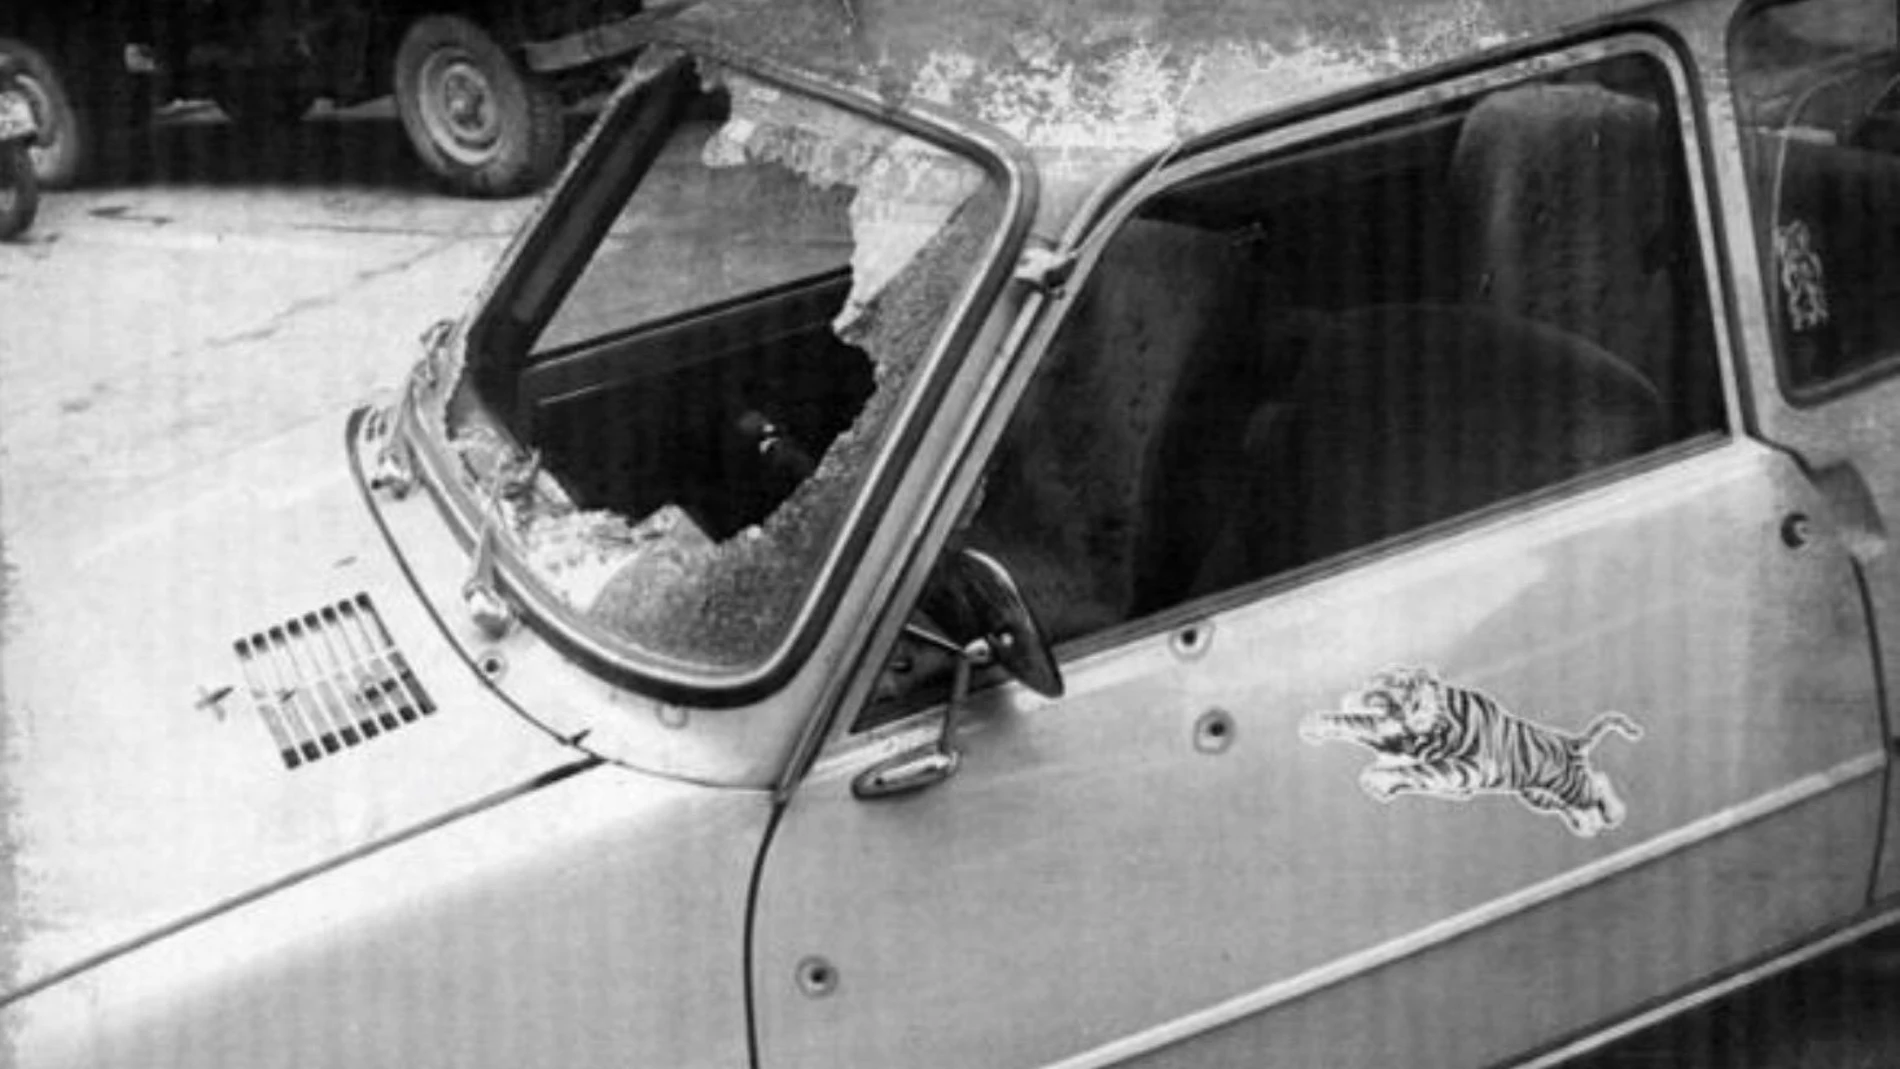 Vehículo de los "novios de Cádiz", Hortensia González Ruiz y Antonio Ramírez Gallardo en el que fueron asesinados por ETA en Beasain, el 6 enero 1979.